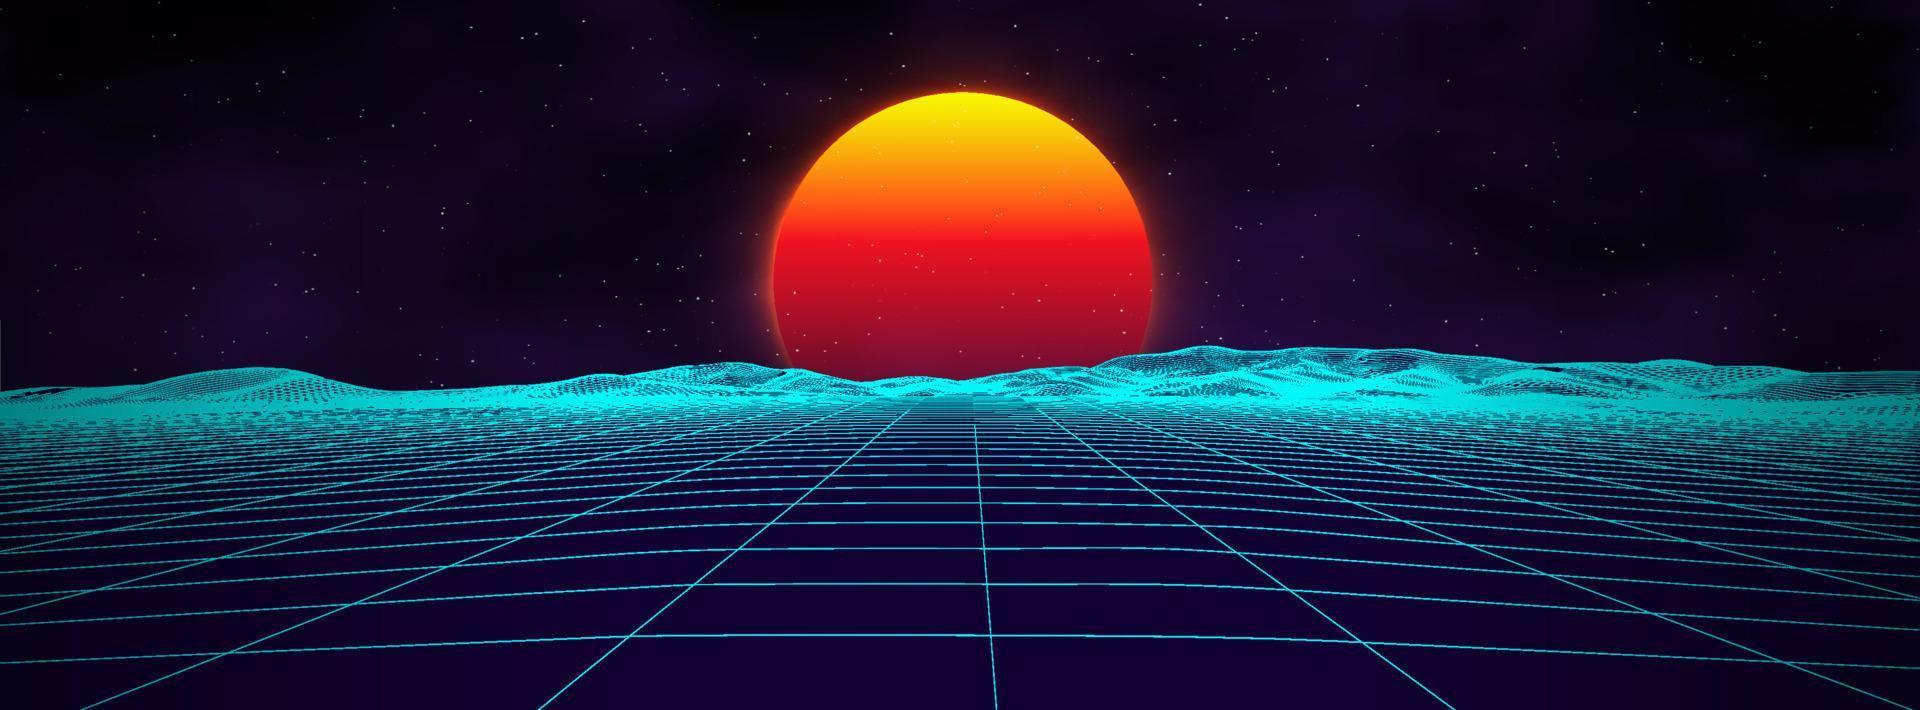 80s achtergrond retro landschap. futuristische neon Jaren 80 stijl. cyber oppervlak. partij achtergrond. retro 80s mode sci-fi zomer landschap achtergrond. vector